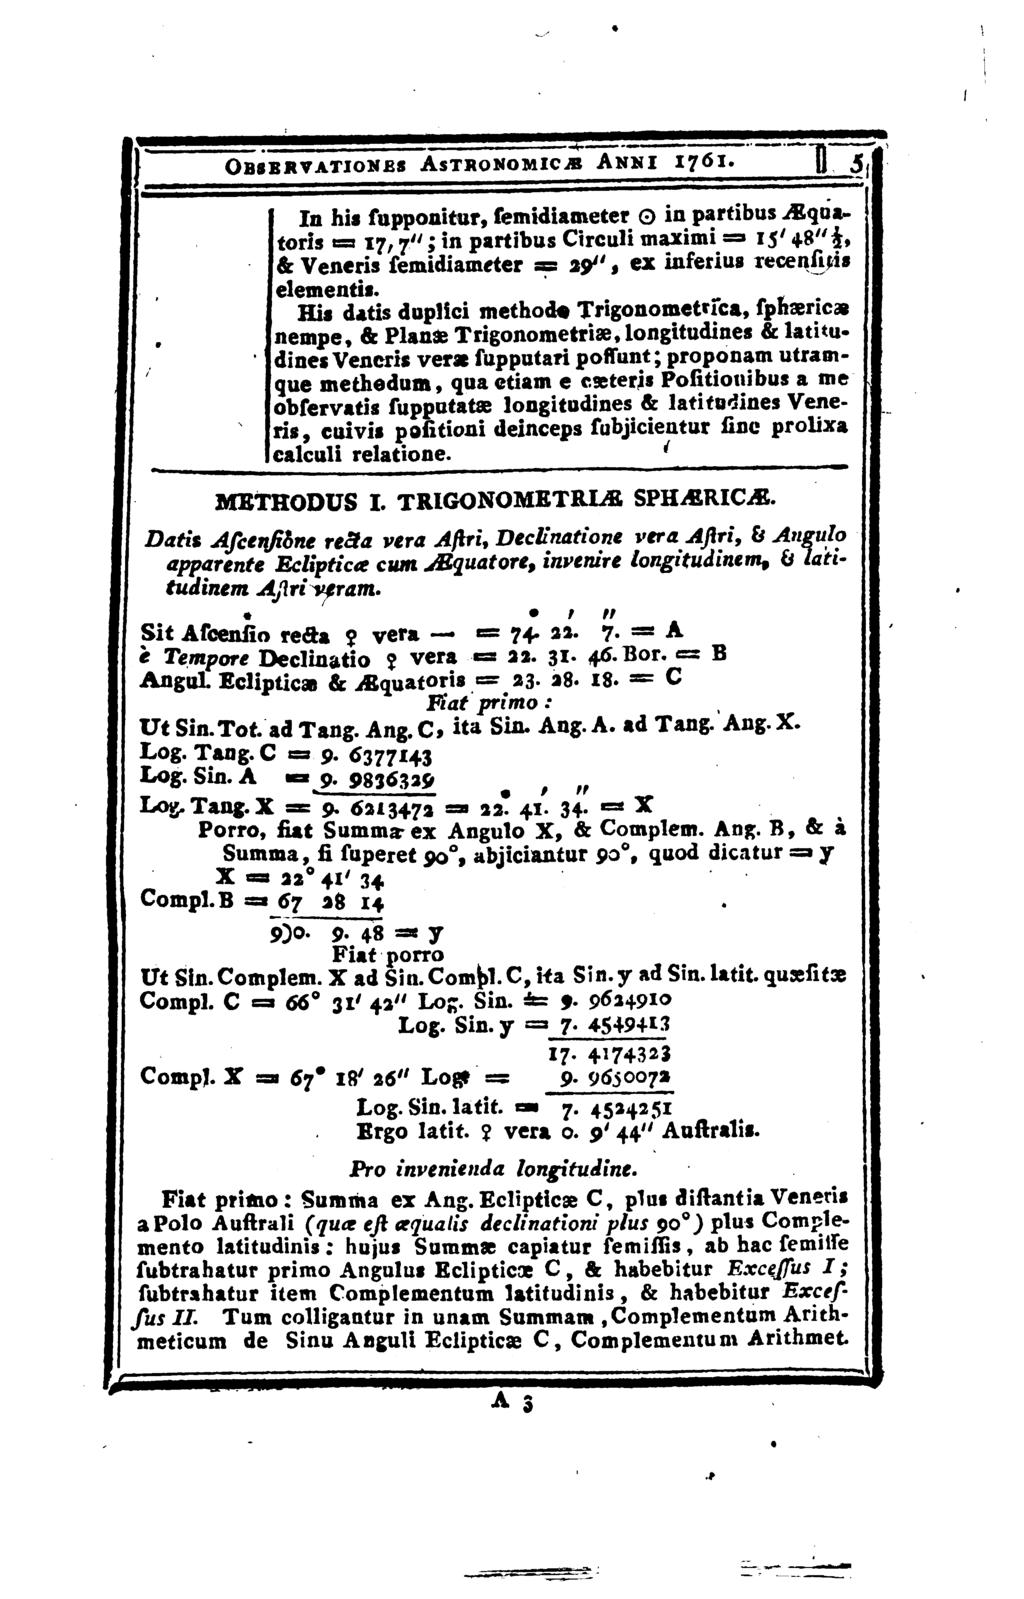 Obsbrvationbs Astronomicjb Ahmi 1J61. In his supponitur, semidiameter 0 in partibus Mquatoris = 17, 7"; in partibus Circuli maximi =» 15' 48"$, & Veneris semidiameter = 39", ex ìnserius recensai!